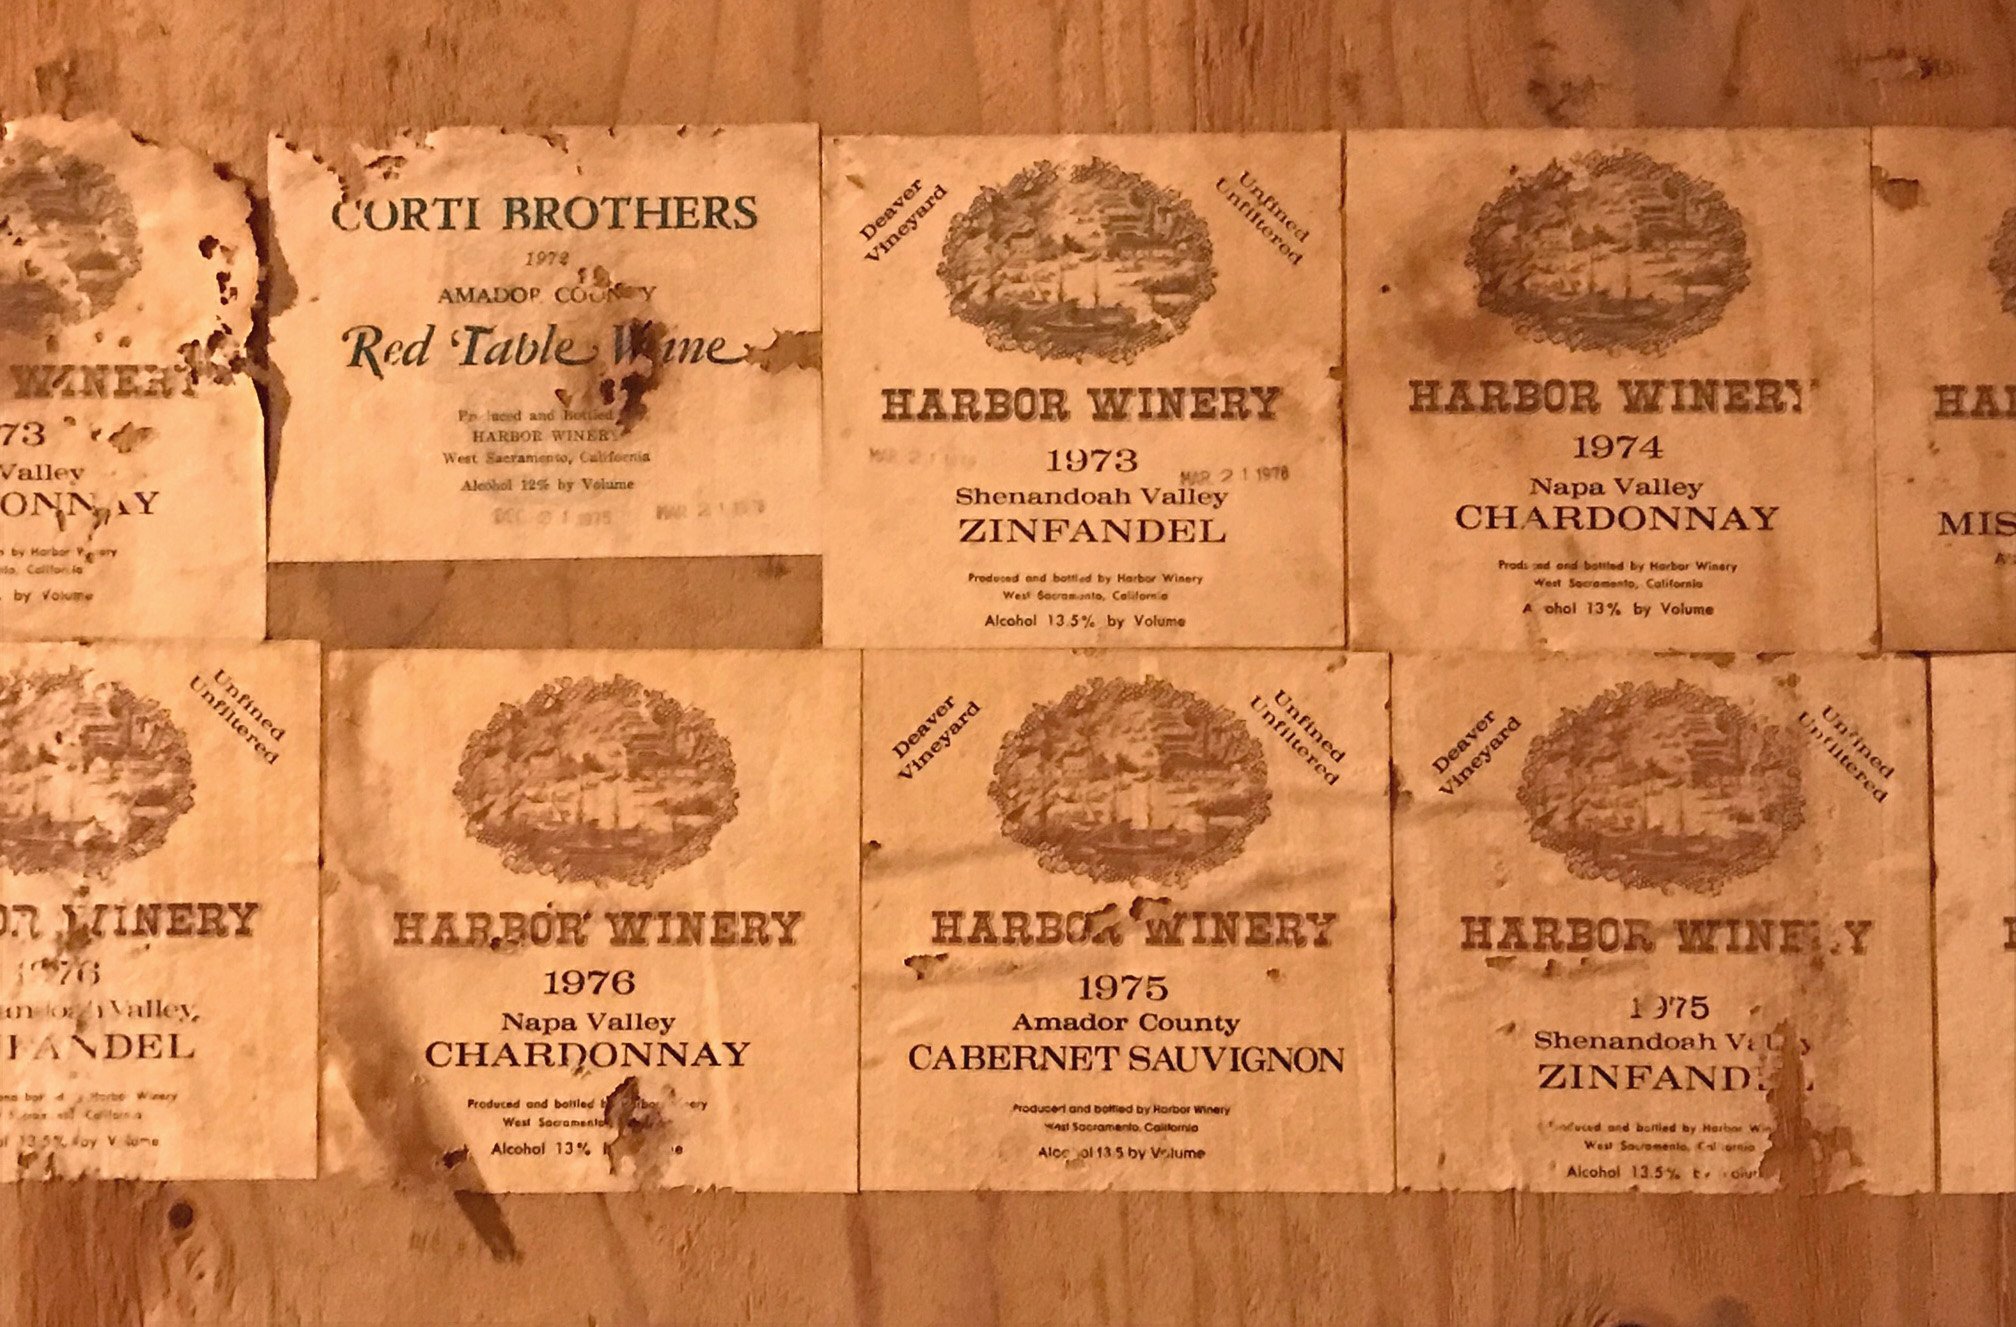 68 harbor winery labels at haarmeyer wine cellars.jpg